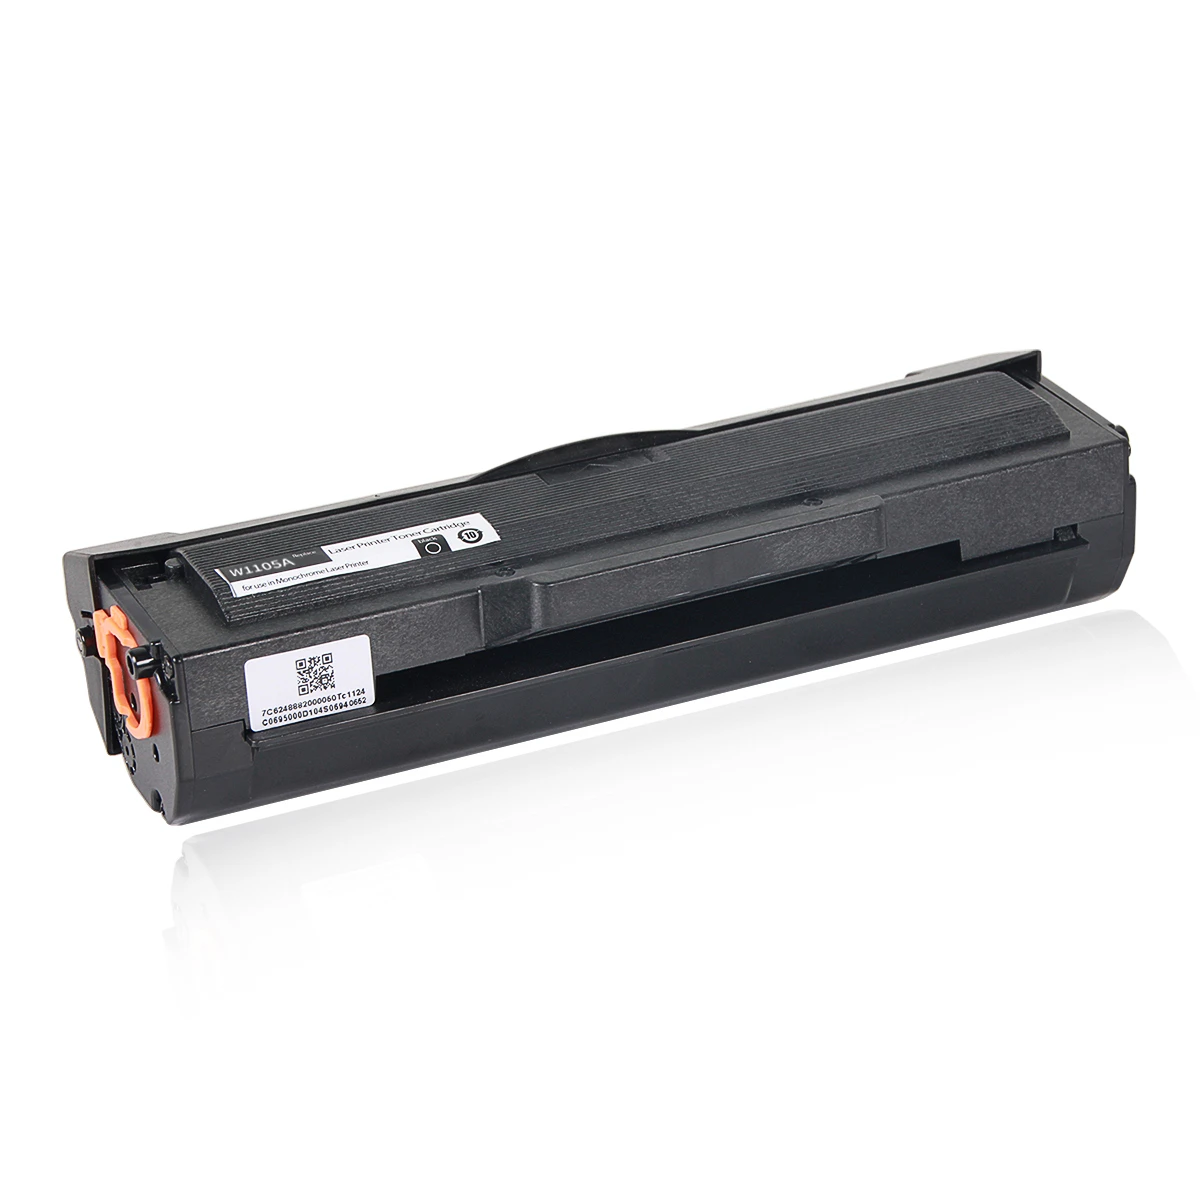 Chip-print toner cartridge W1105a/105a W1106a/106a W1107a/107a for HPs Laser MFP 131a/133pn/135a/135fnw/136a/107a 1.5K